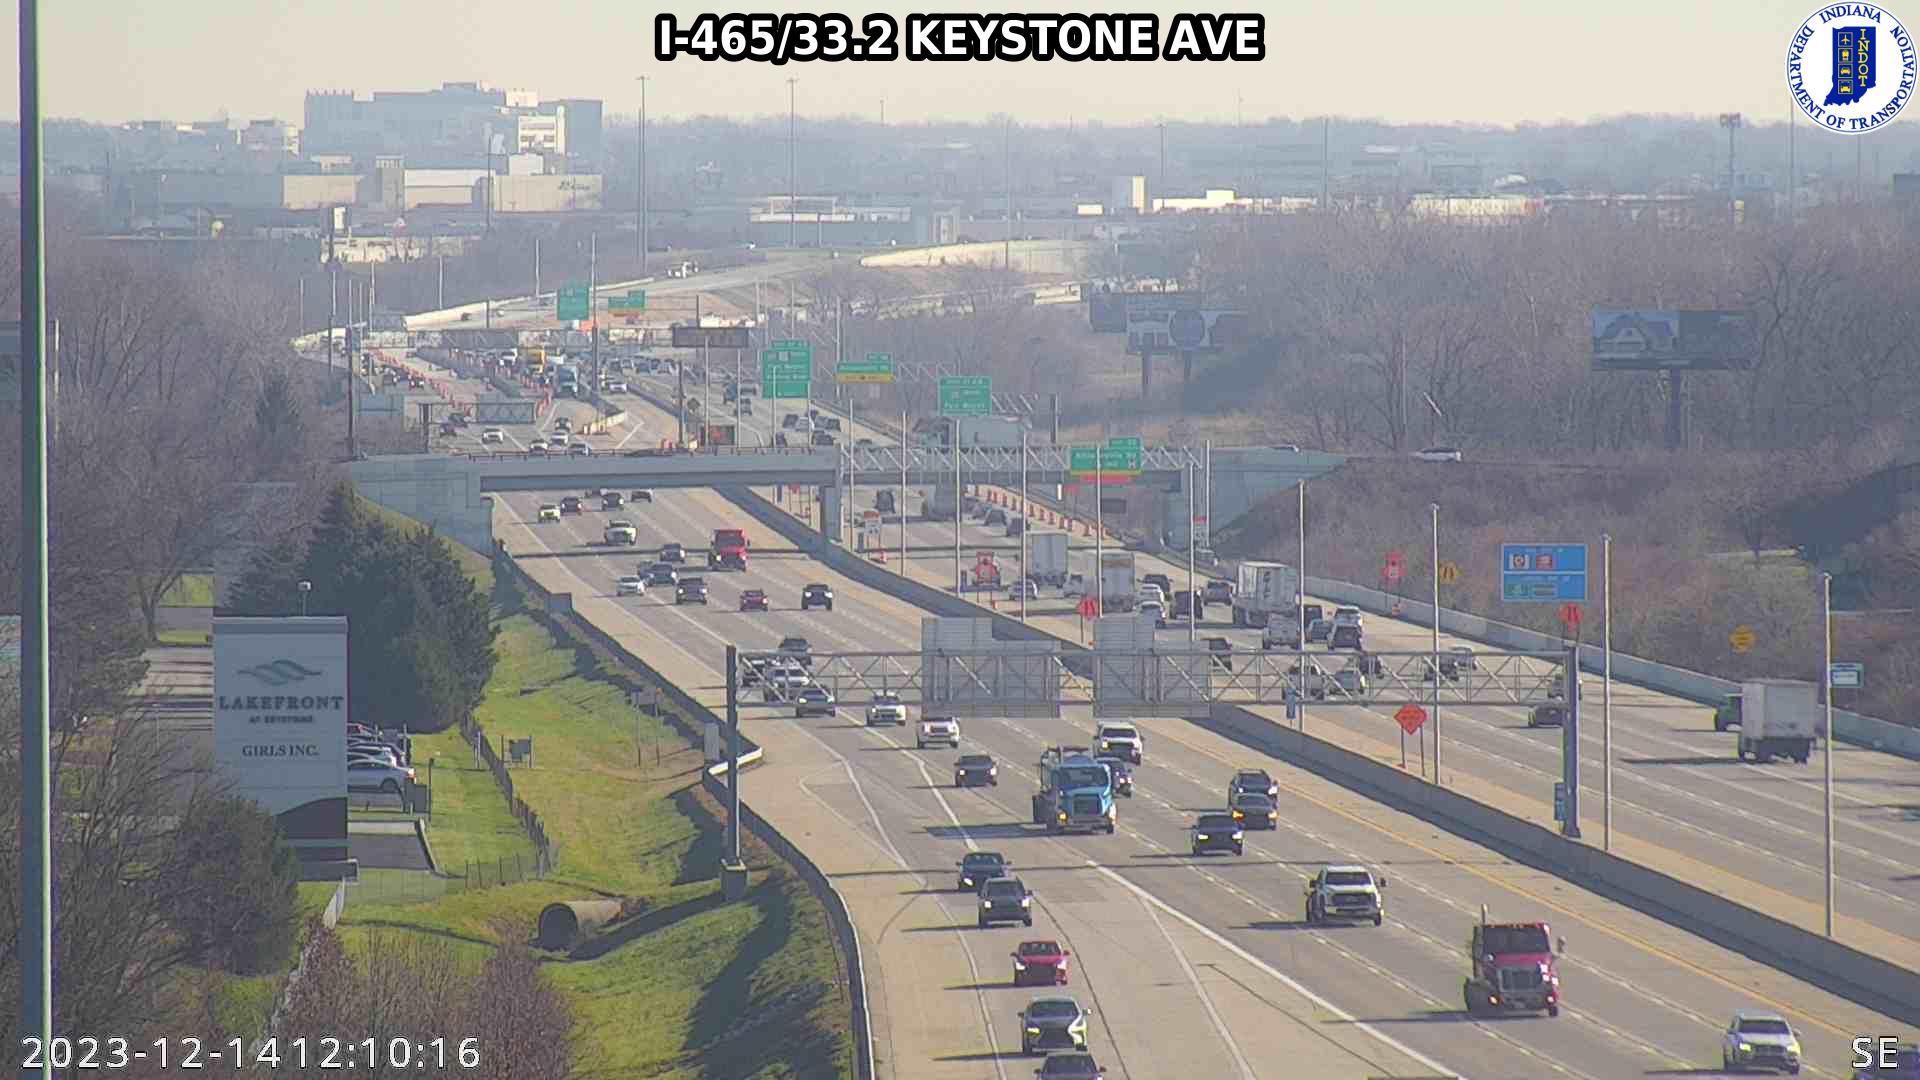 Traffic Cam Indianapolis: I-465: I-465/33.2 KEYSTONE AVE Player